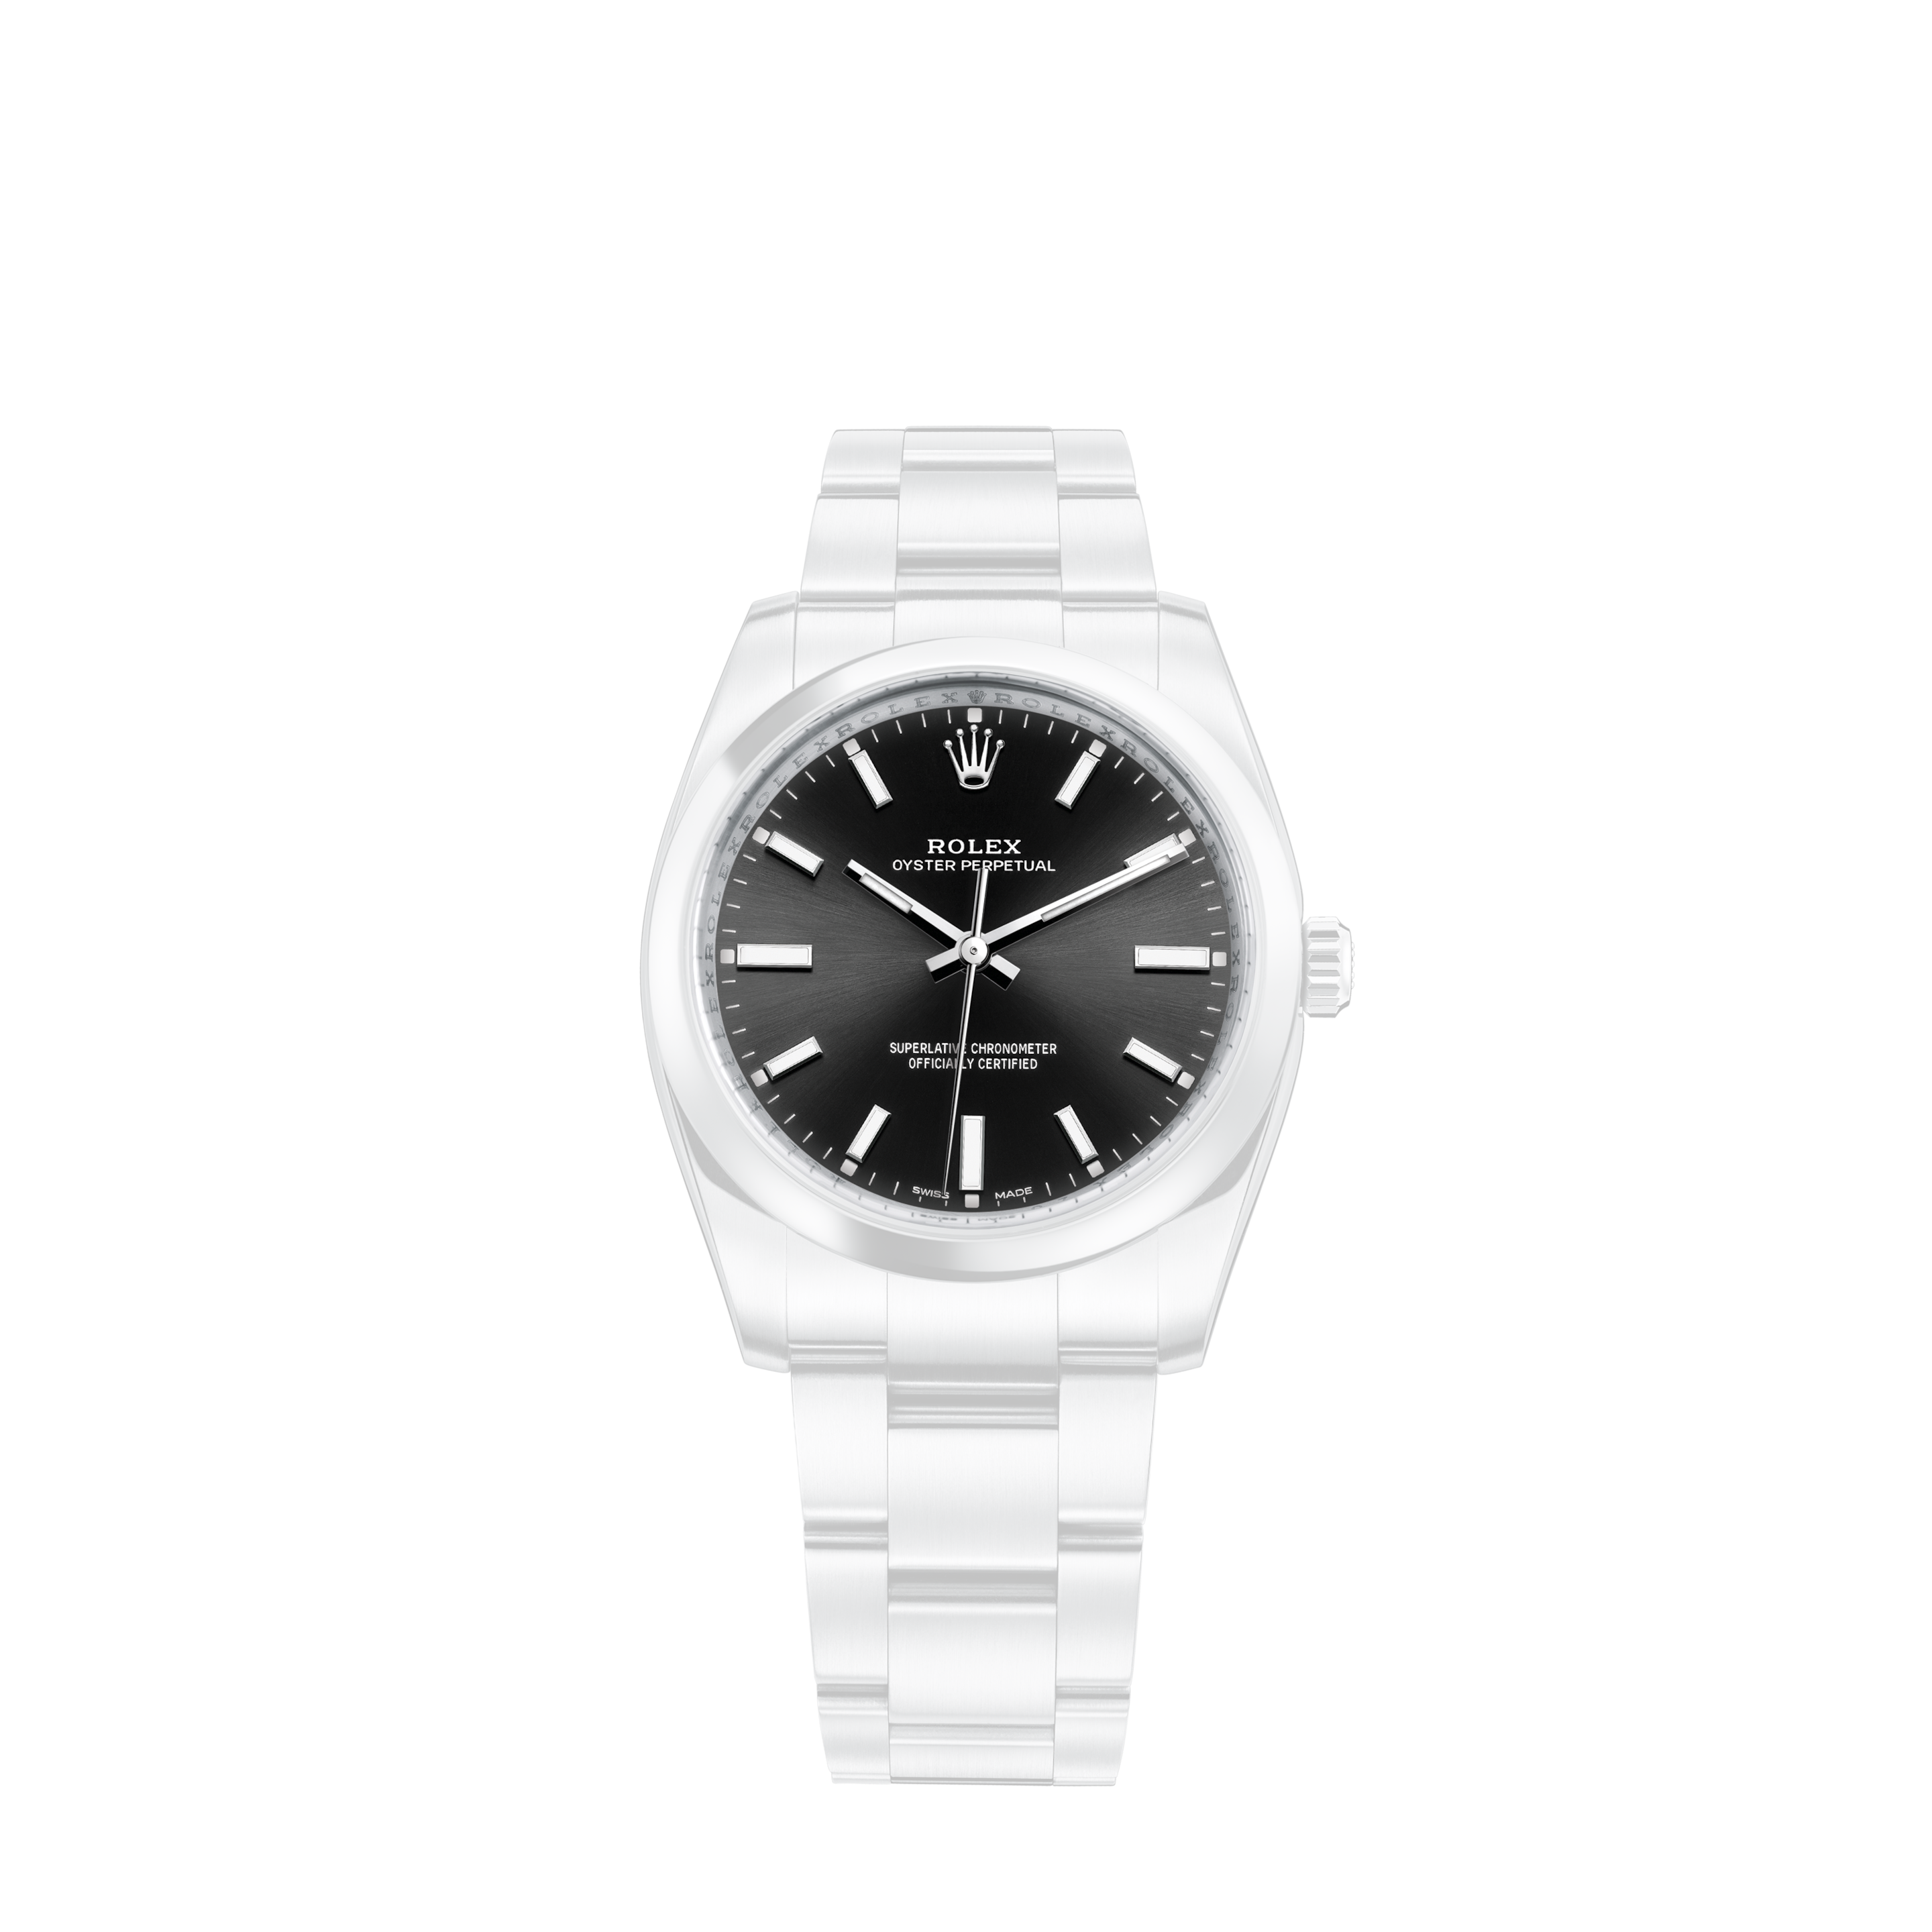 Rolex Datejust 26mm Steel Jubilee Diamond Watch with Salmon DialRolex Datejust 26mm Steel Jubilee Diamond Watch with Silver Dial